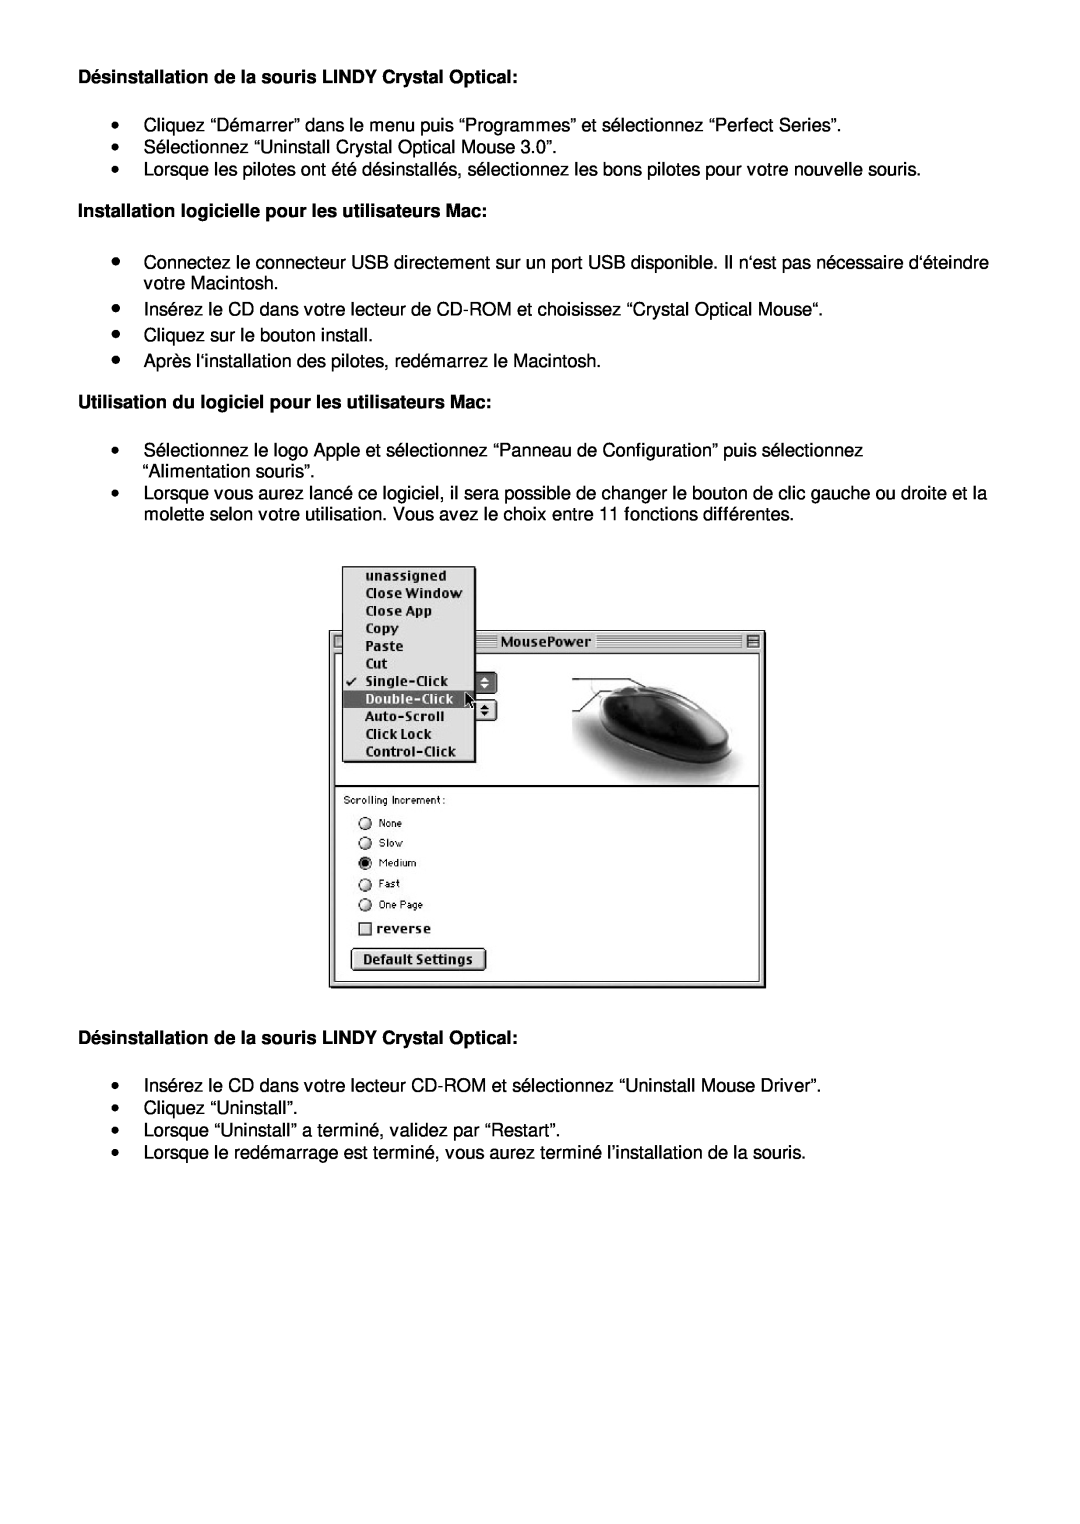 Lindy 20599 manual Dé sinstallation de la souris LINDY Crystal Optical, Installation logicielle pour les utilisateurs Mac 